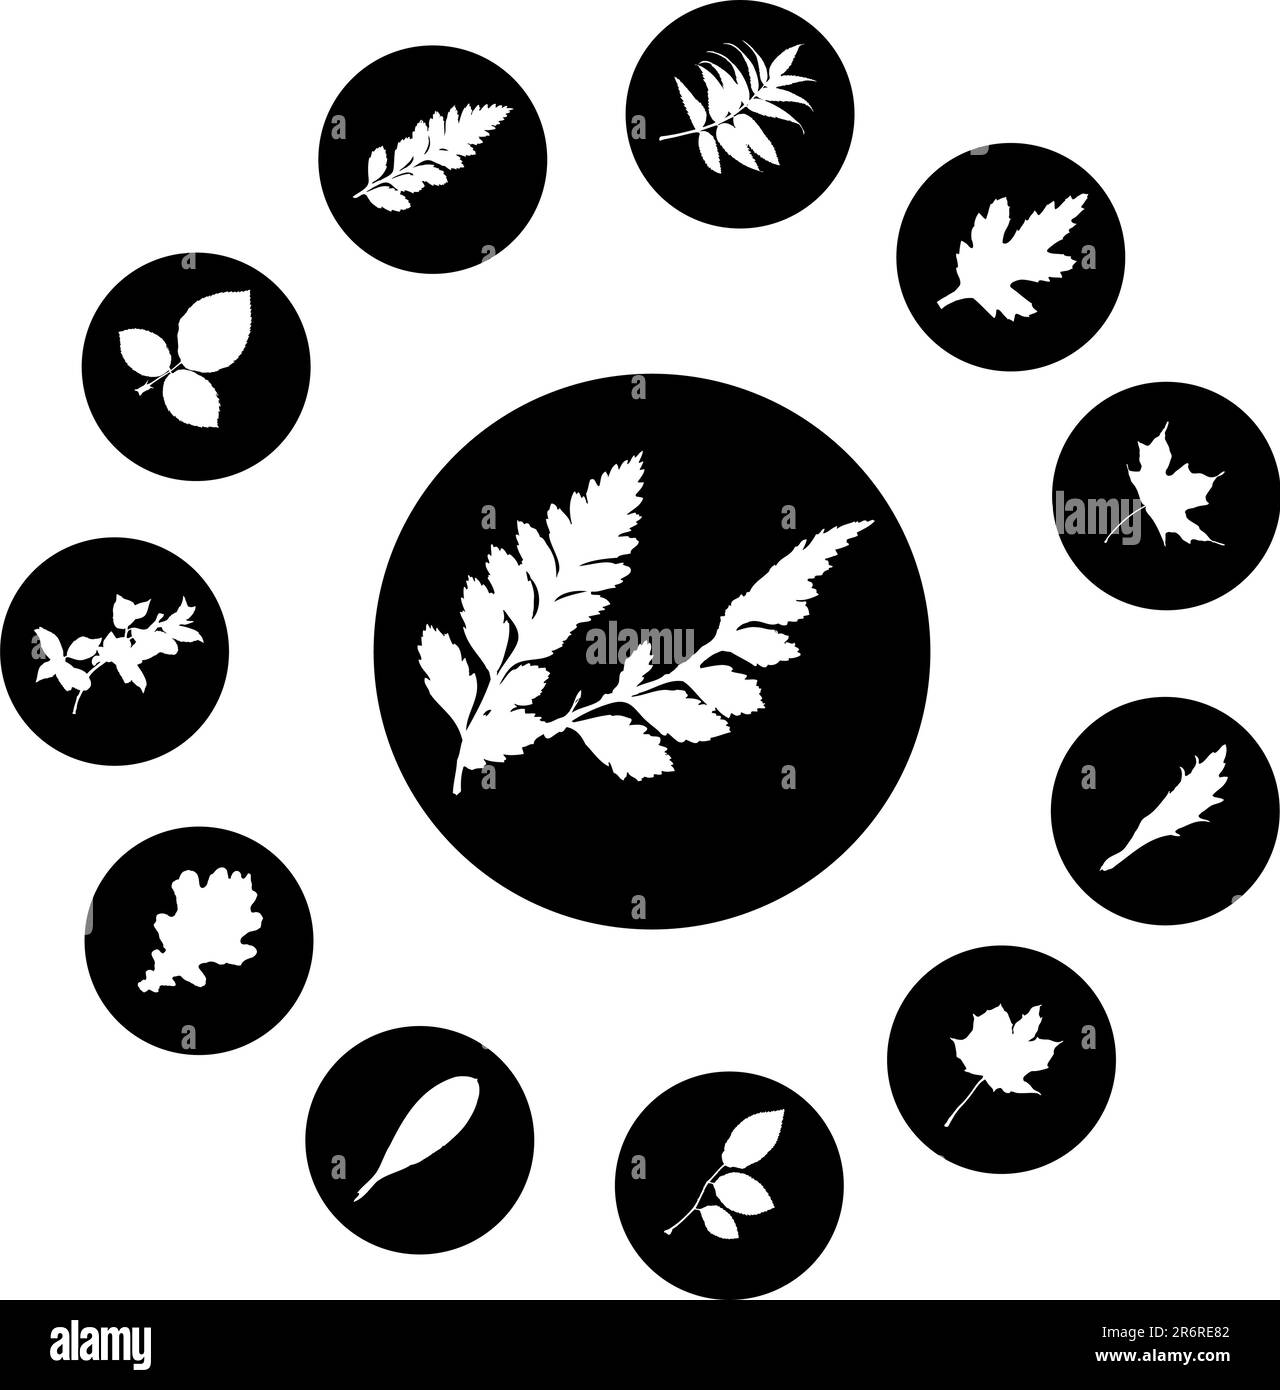 El conjunto de siluetas de hojas, se presenta en forma de 12 botones. Ilustración del Vector